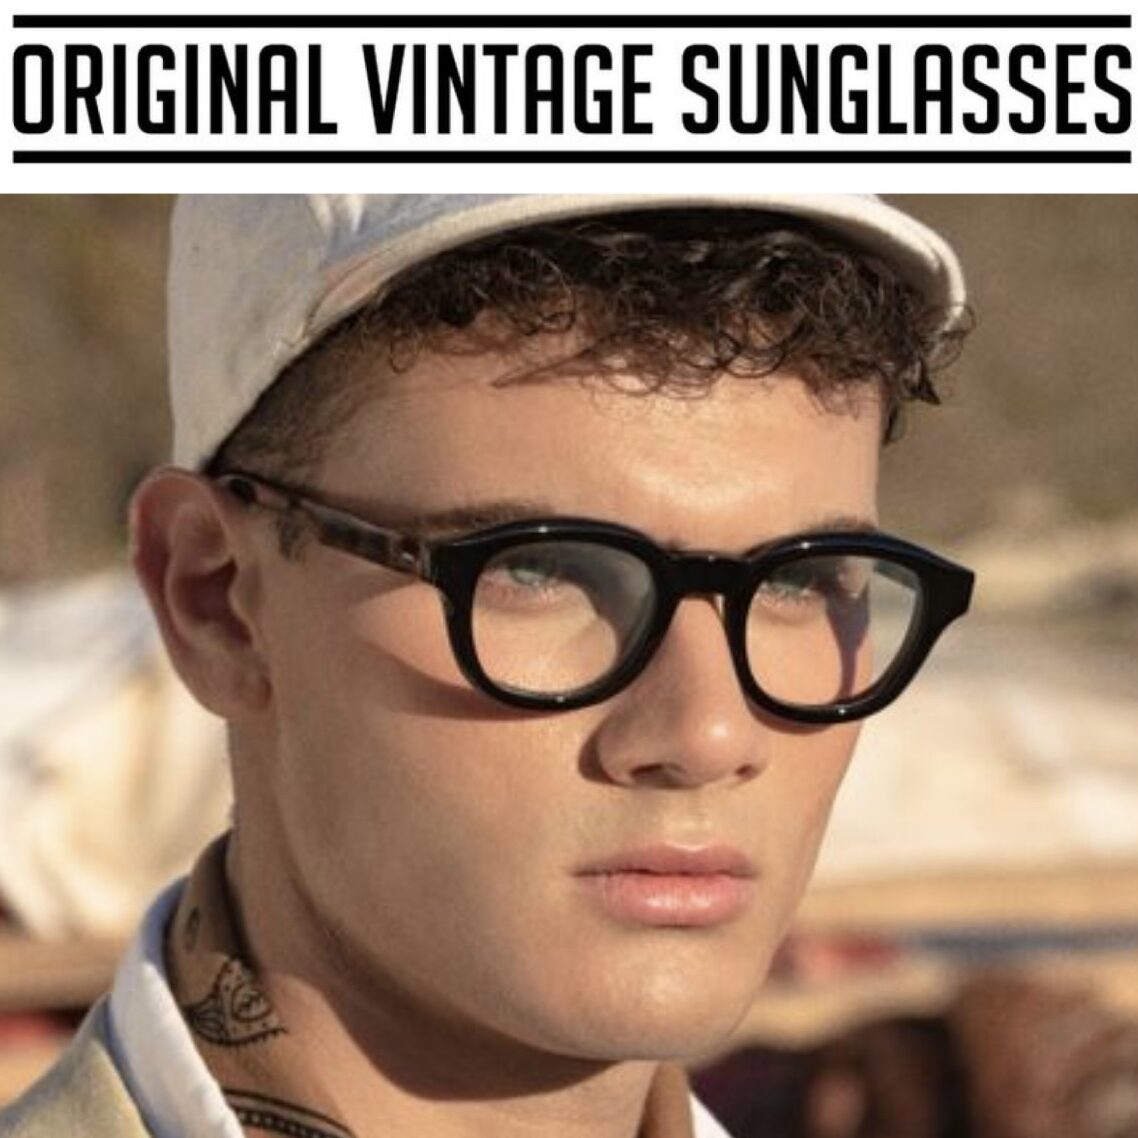 ottica cannone occhiali da vista uomo original vintage sunglasses